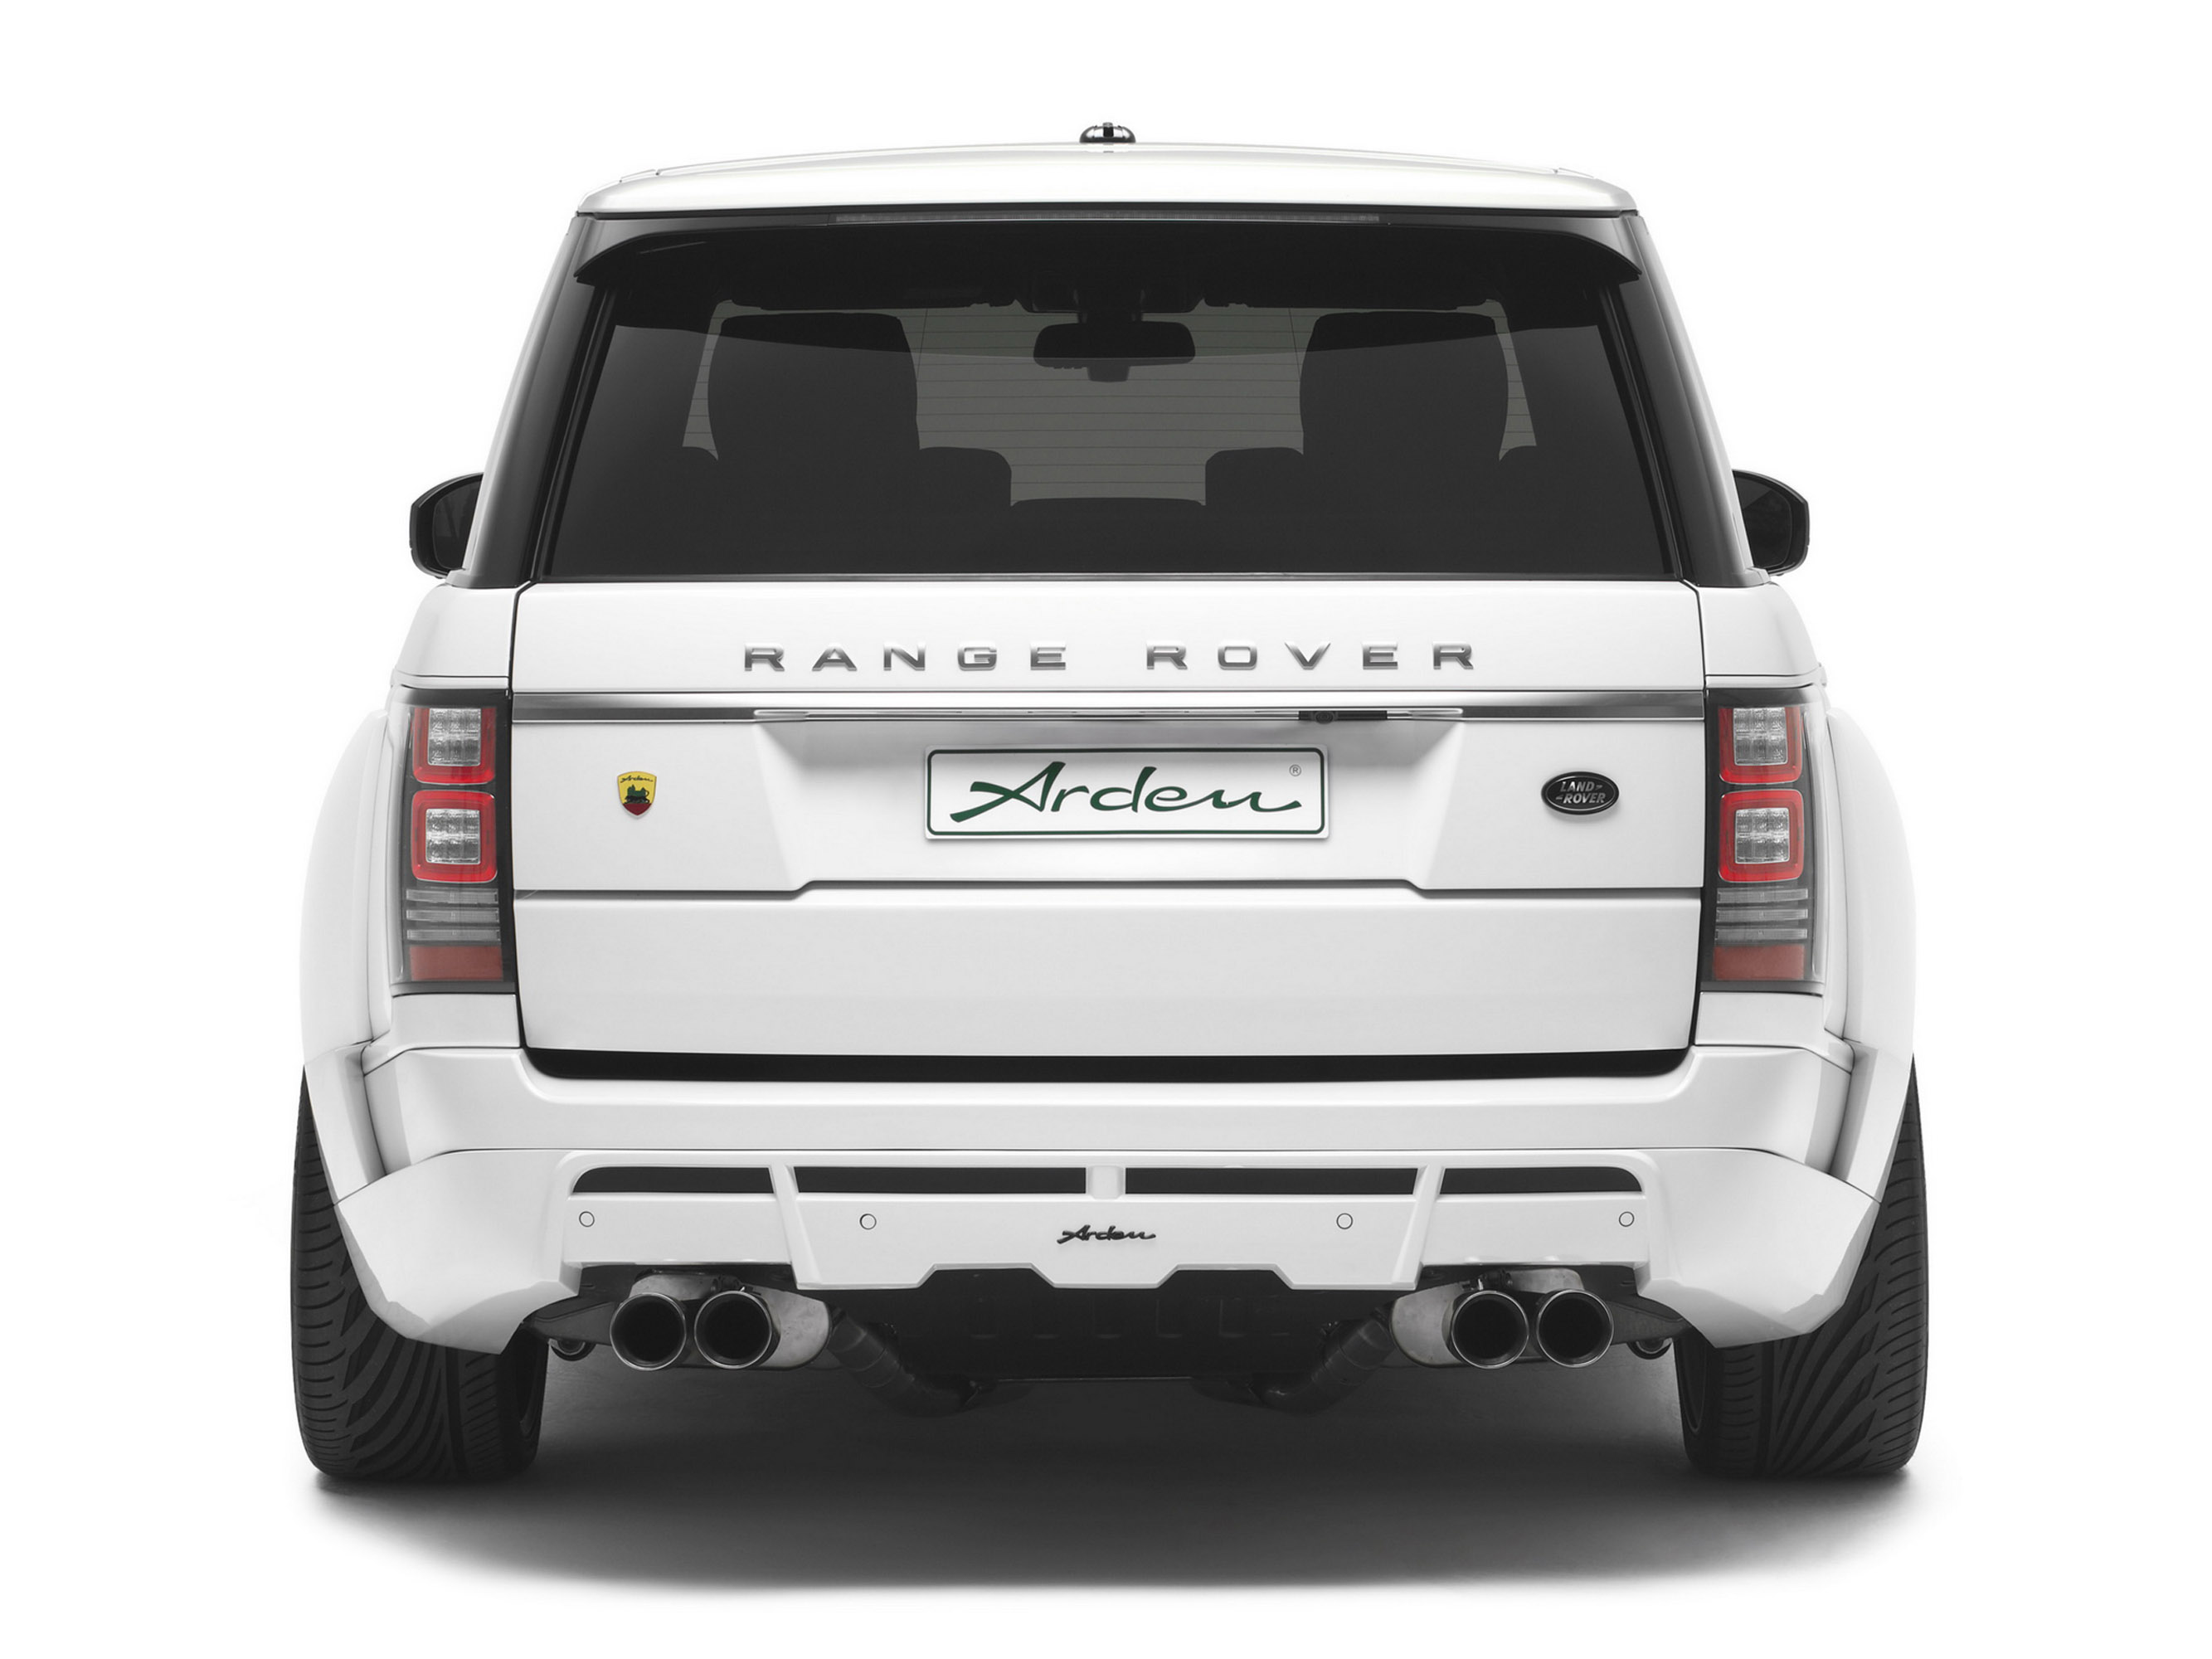 Arden Range Rover AR 9 Spirit